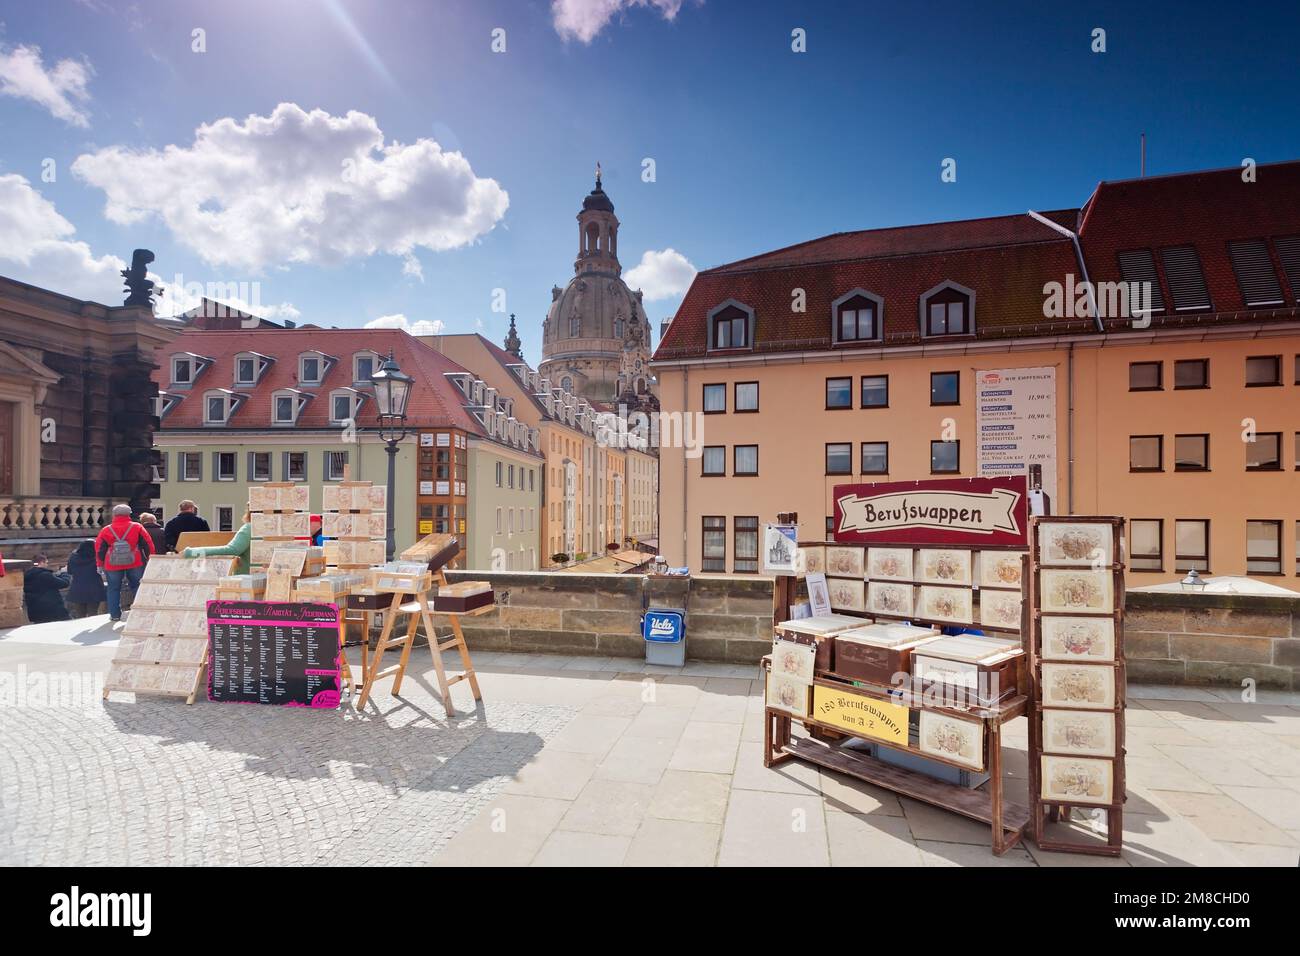 Vue panoramique de la vieille ville de Dresde, Allemagne Banque D'Images